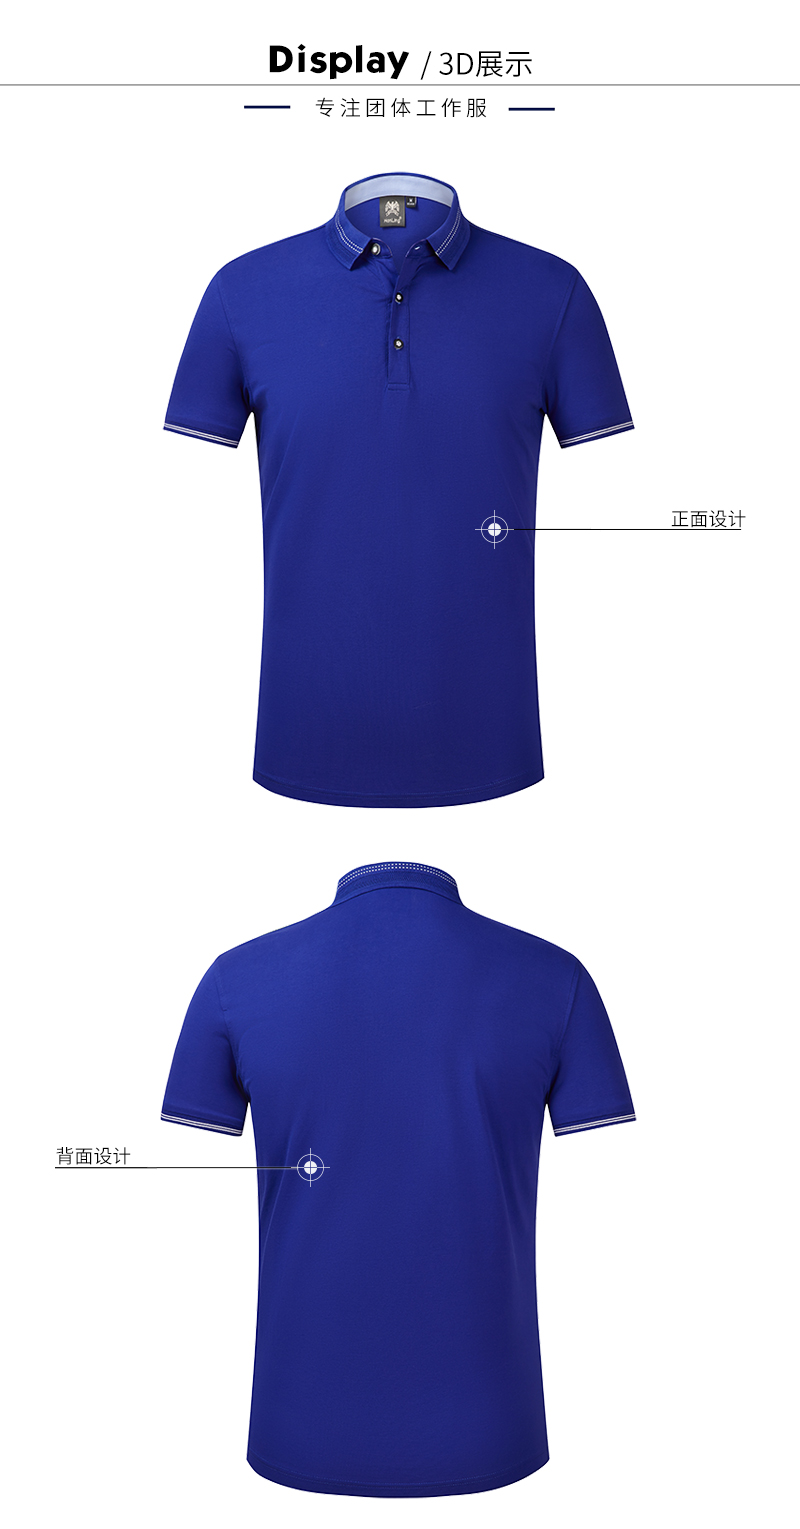 北京定做t恤衫,北京专业t恤衫公司,北京t恤衫厂家(图11)